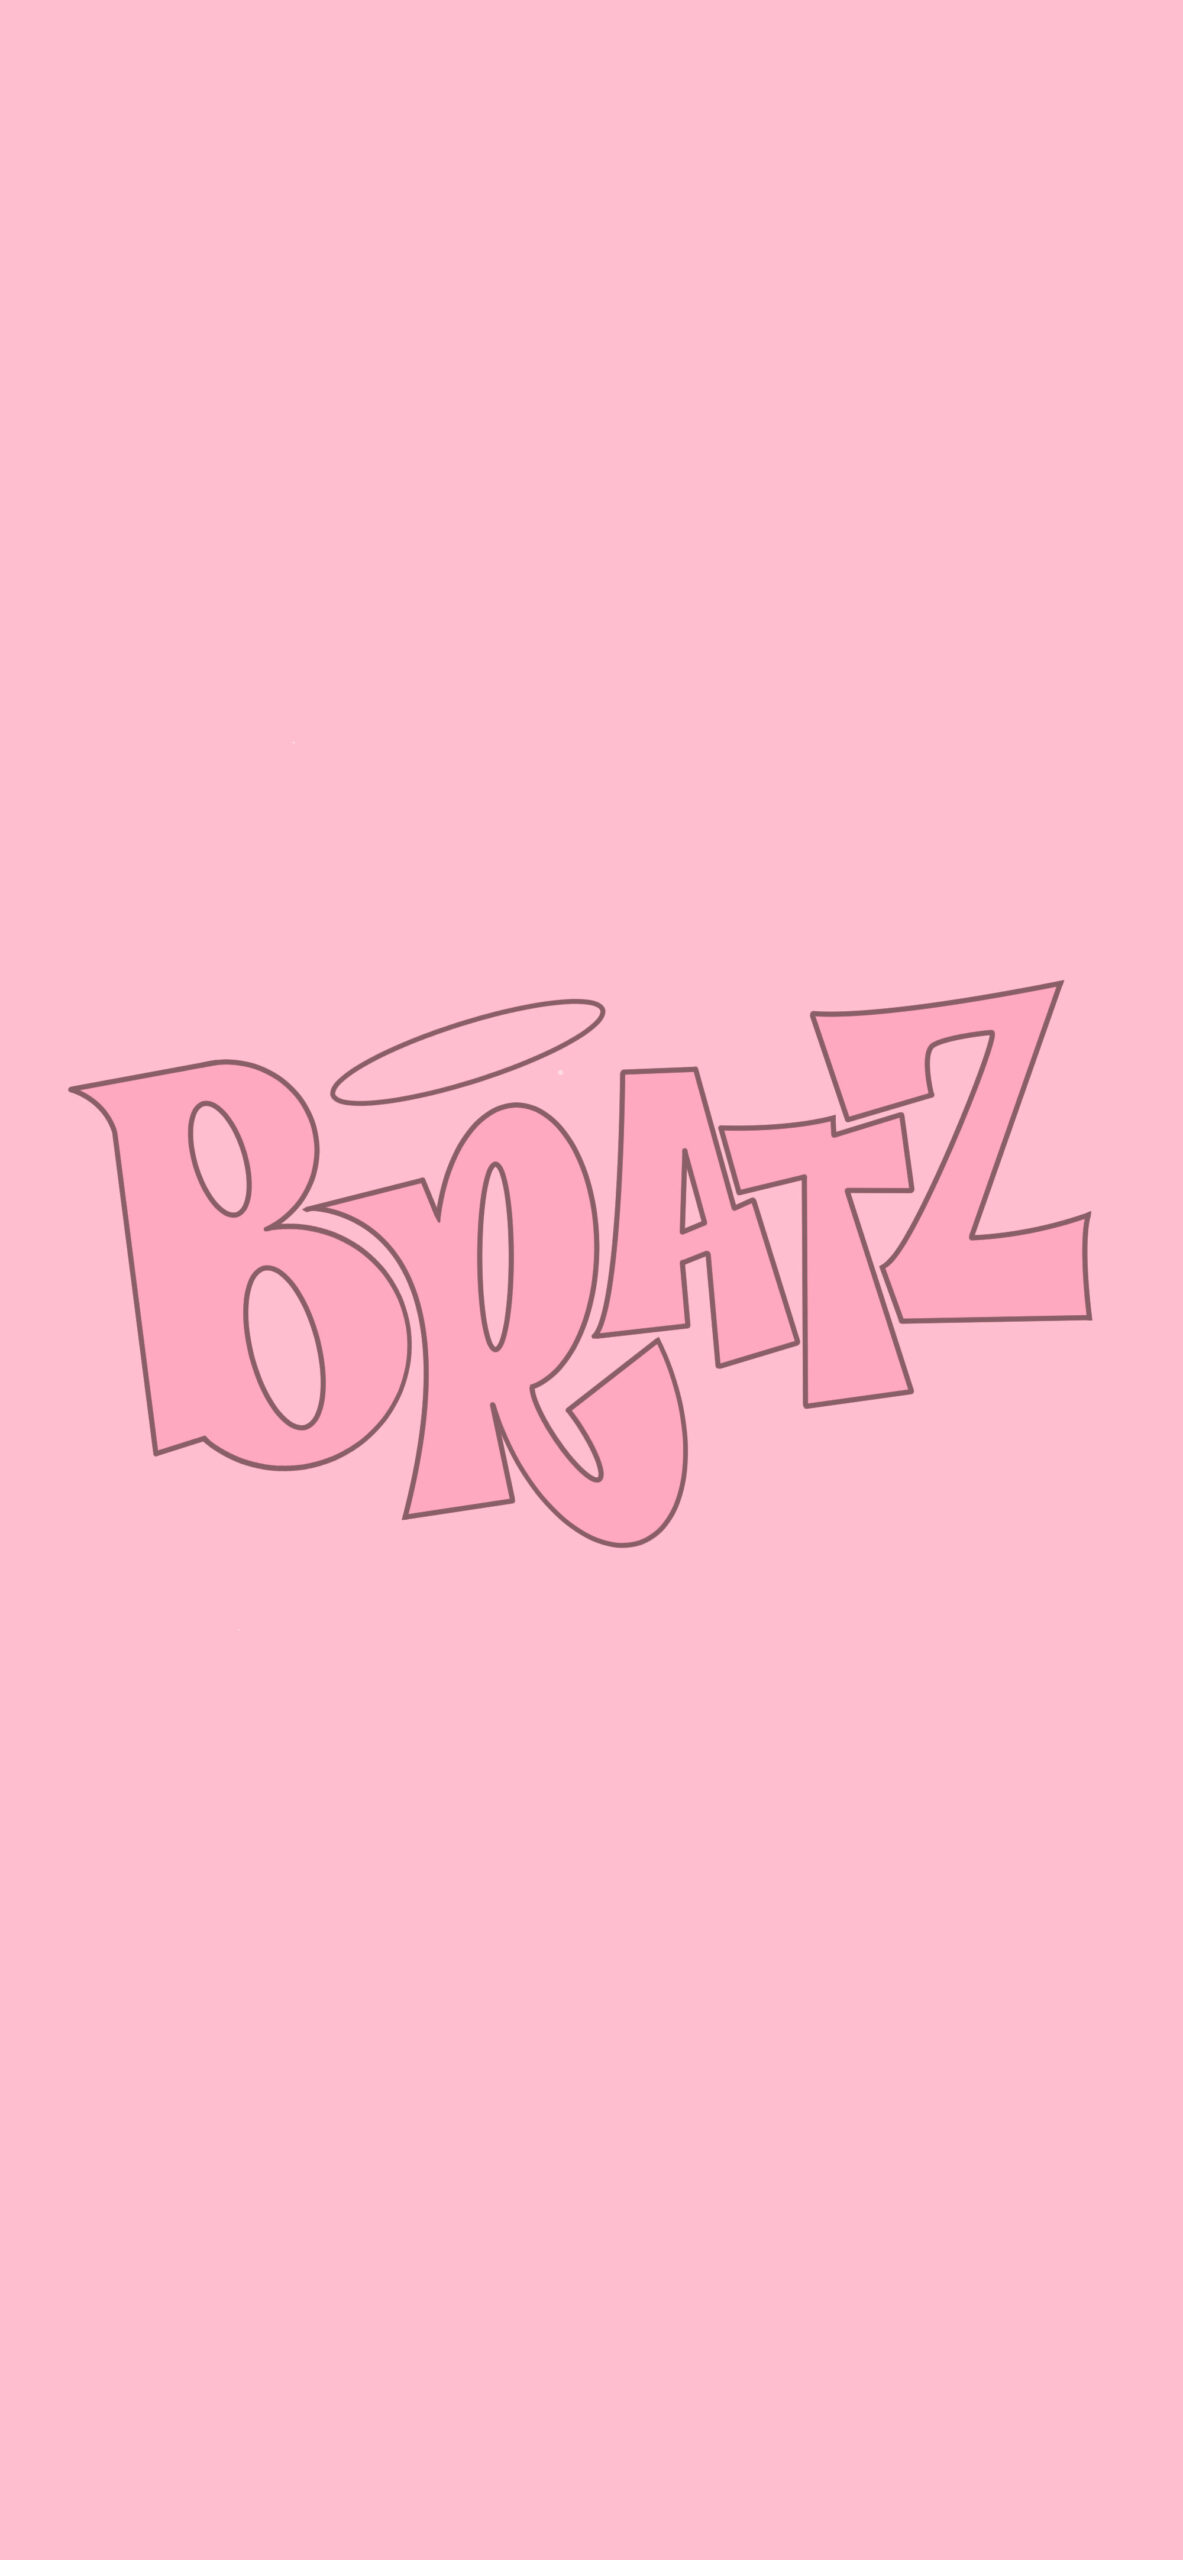 bratz logo pink background